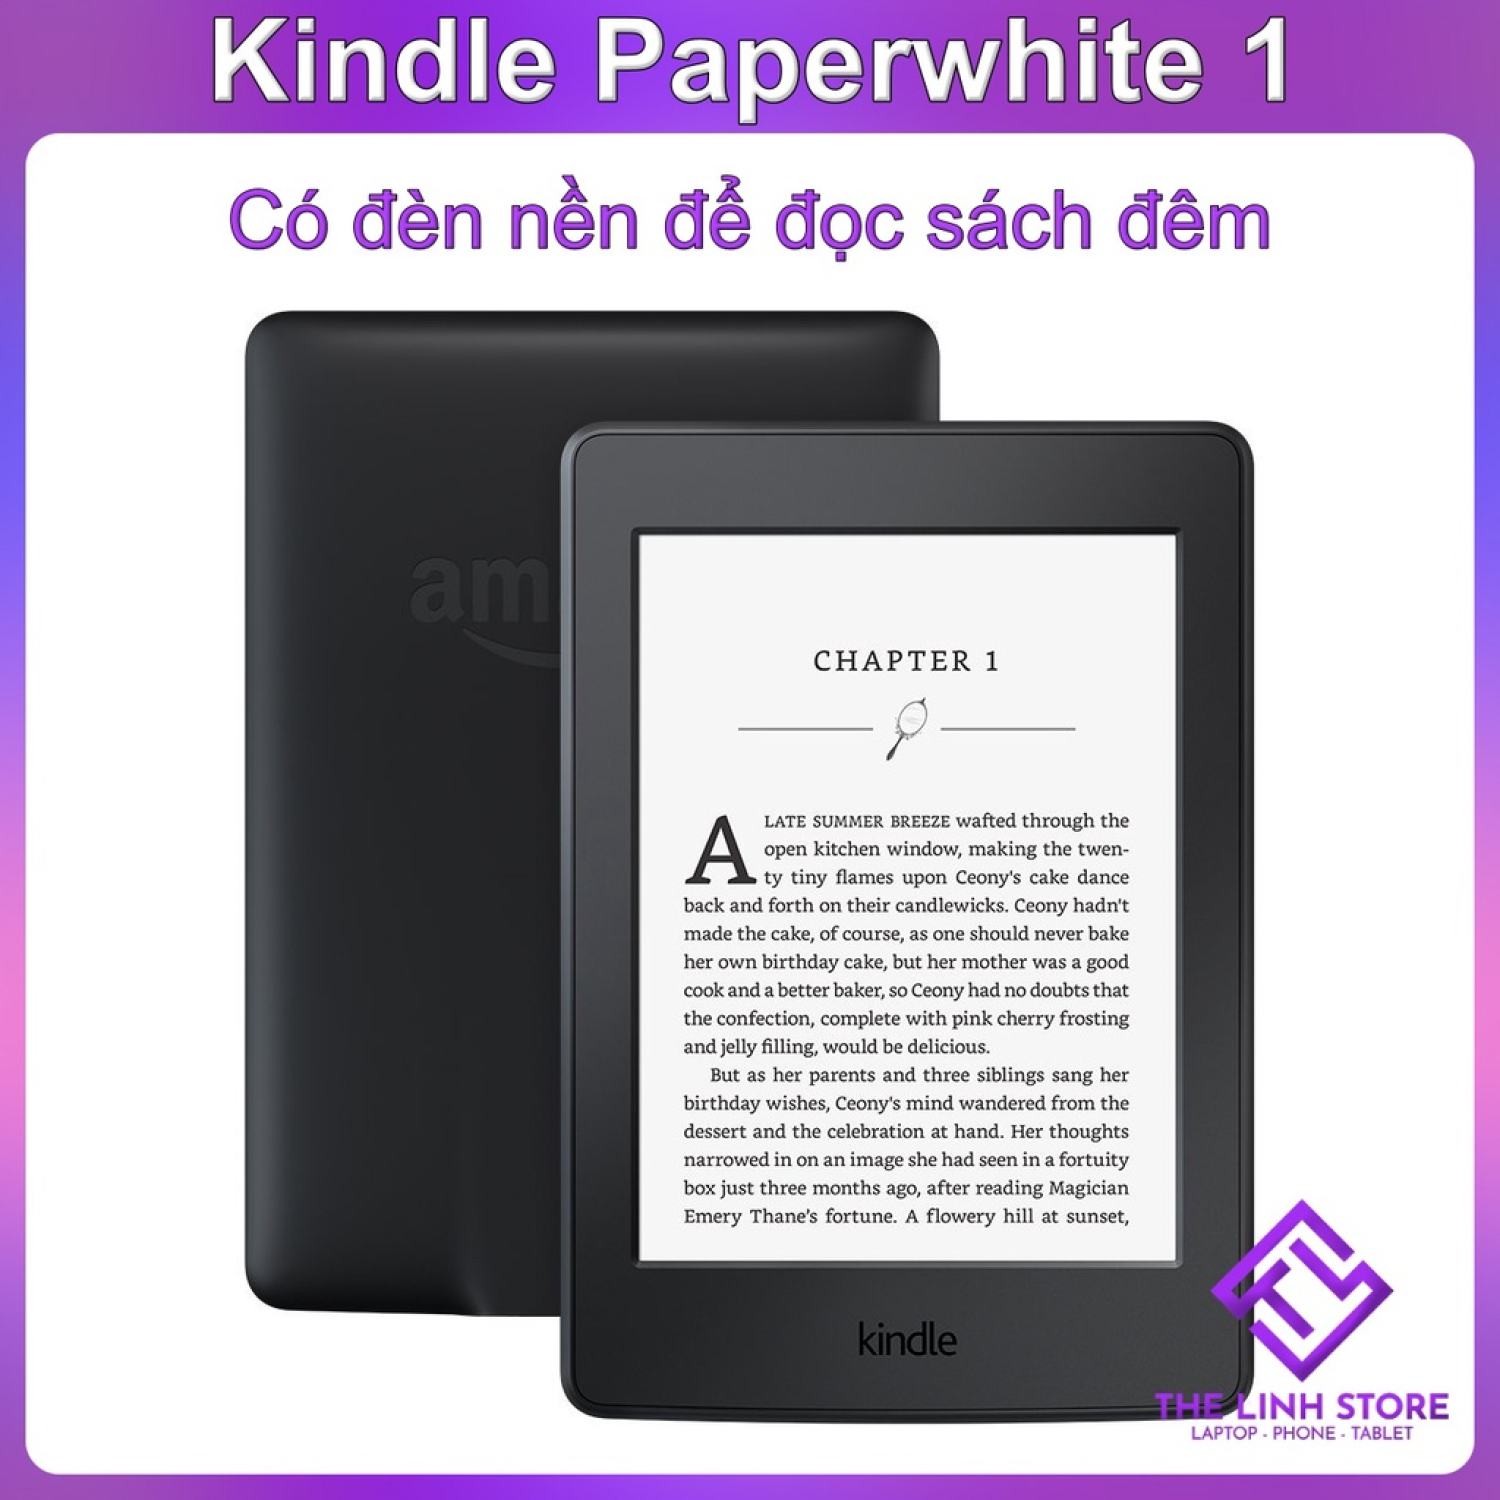 Máy đọc sách Kindle Paperwhite 1 5th Kindle PPW1 có đèn nền để đọc ban đêm